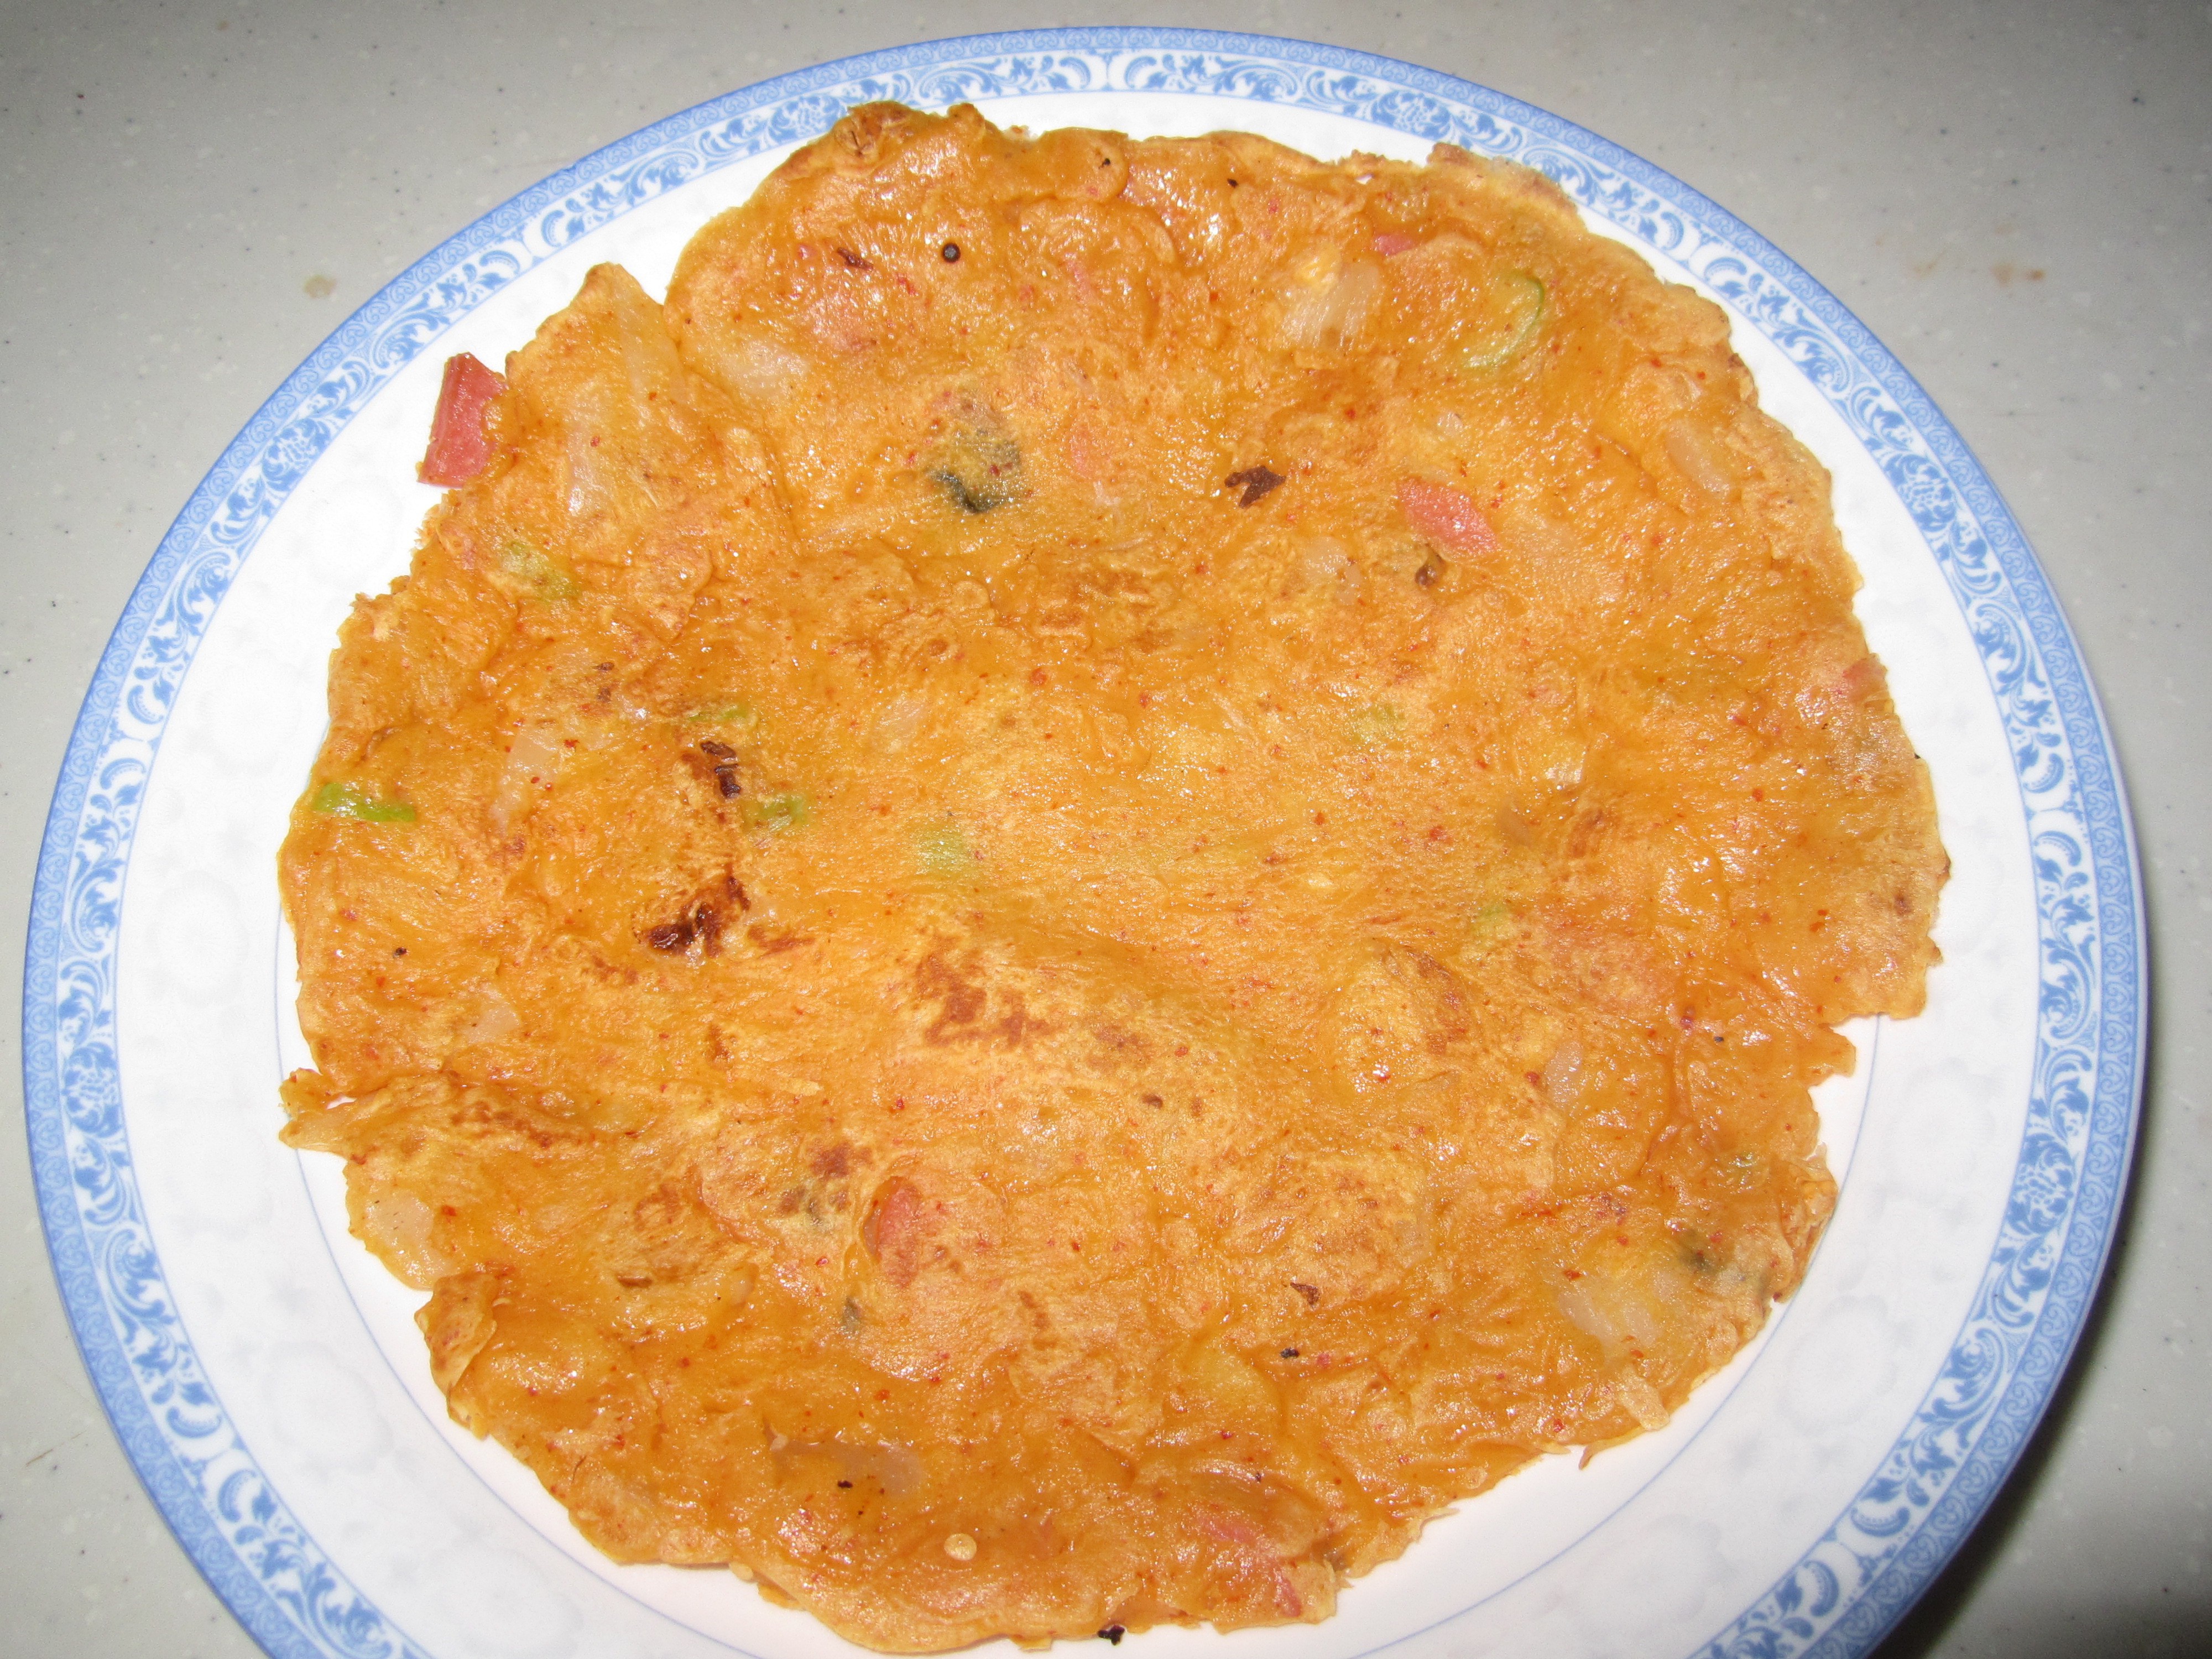 韩式泡菜饼